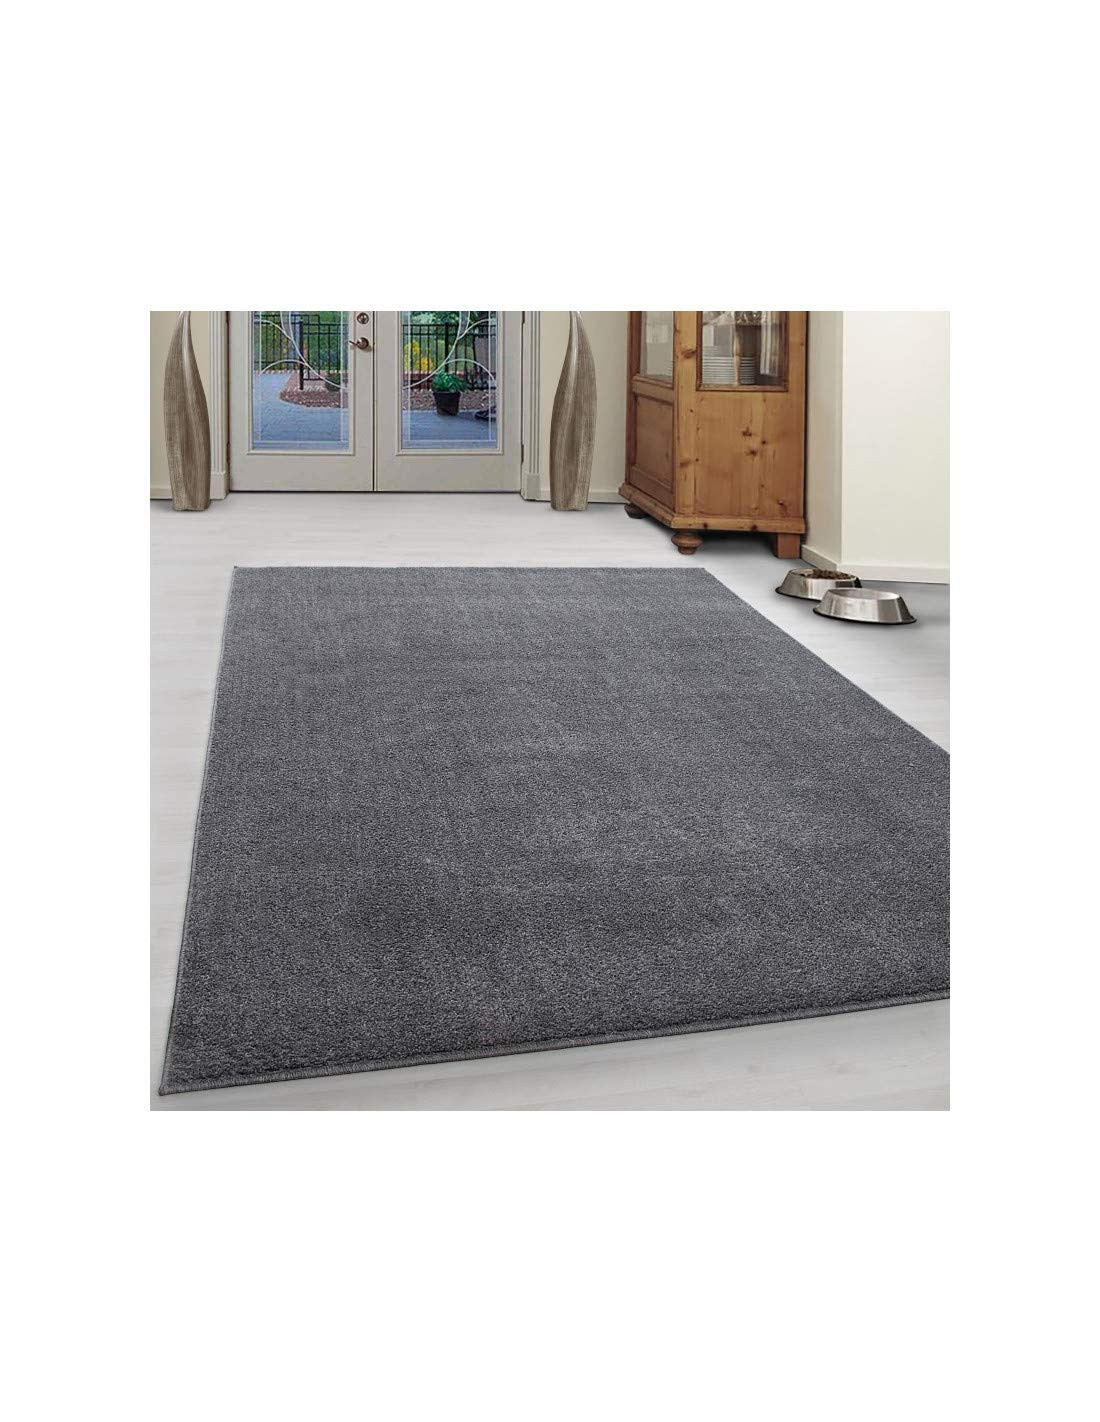 Carpet 1001 Der Wohnzimmerteppich, Niedrigflor, modern, unifarben Farben: